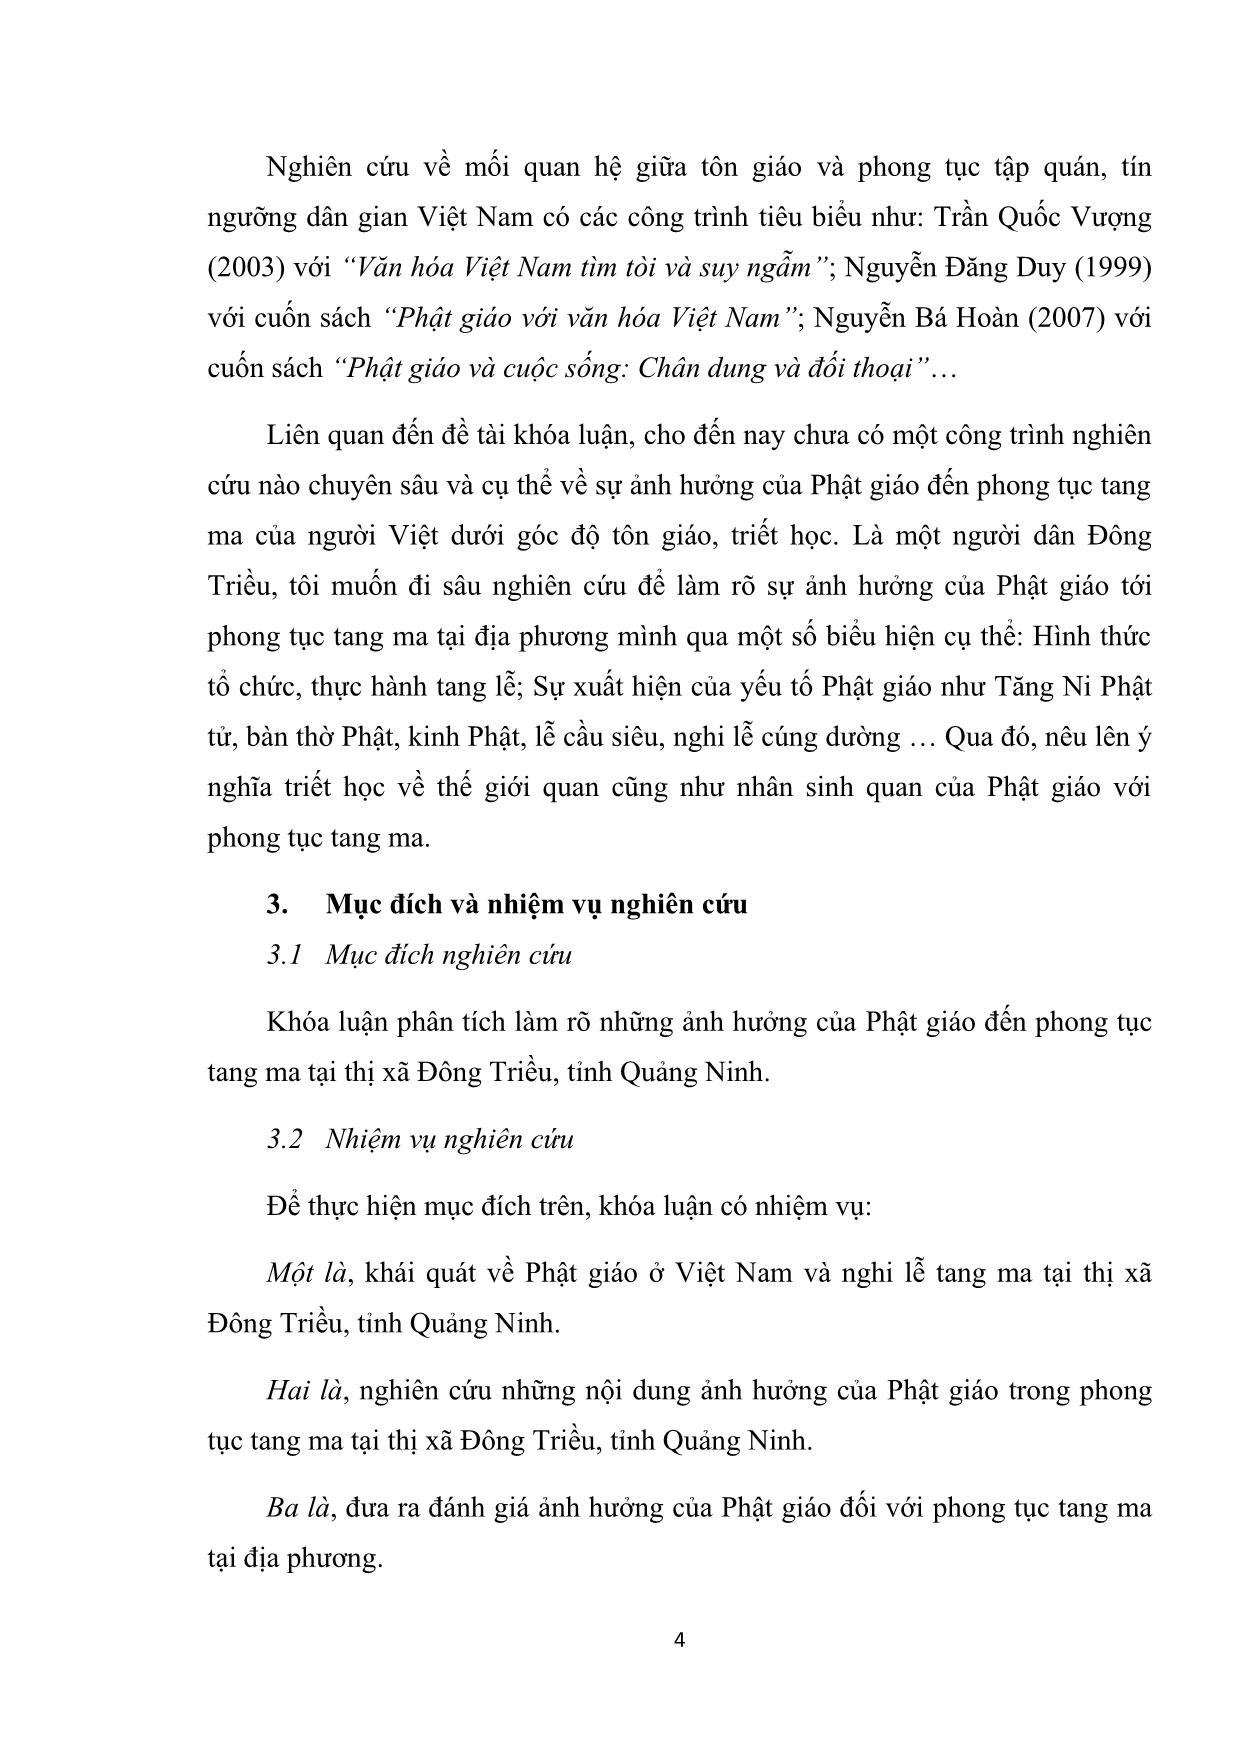 Khóa luận Ảnh hưởng của phật giáo trong phong tục tang ma tại thị xã Đông Triều, tỉnh Quảng Ninh trang 10